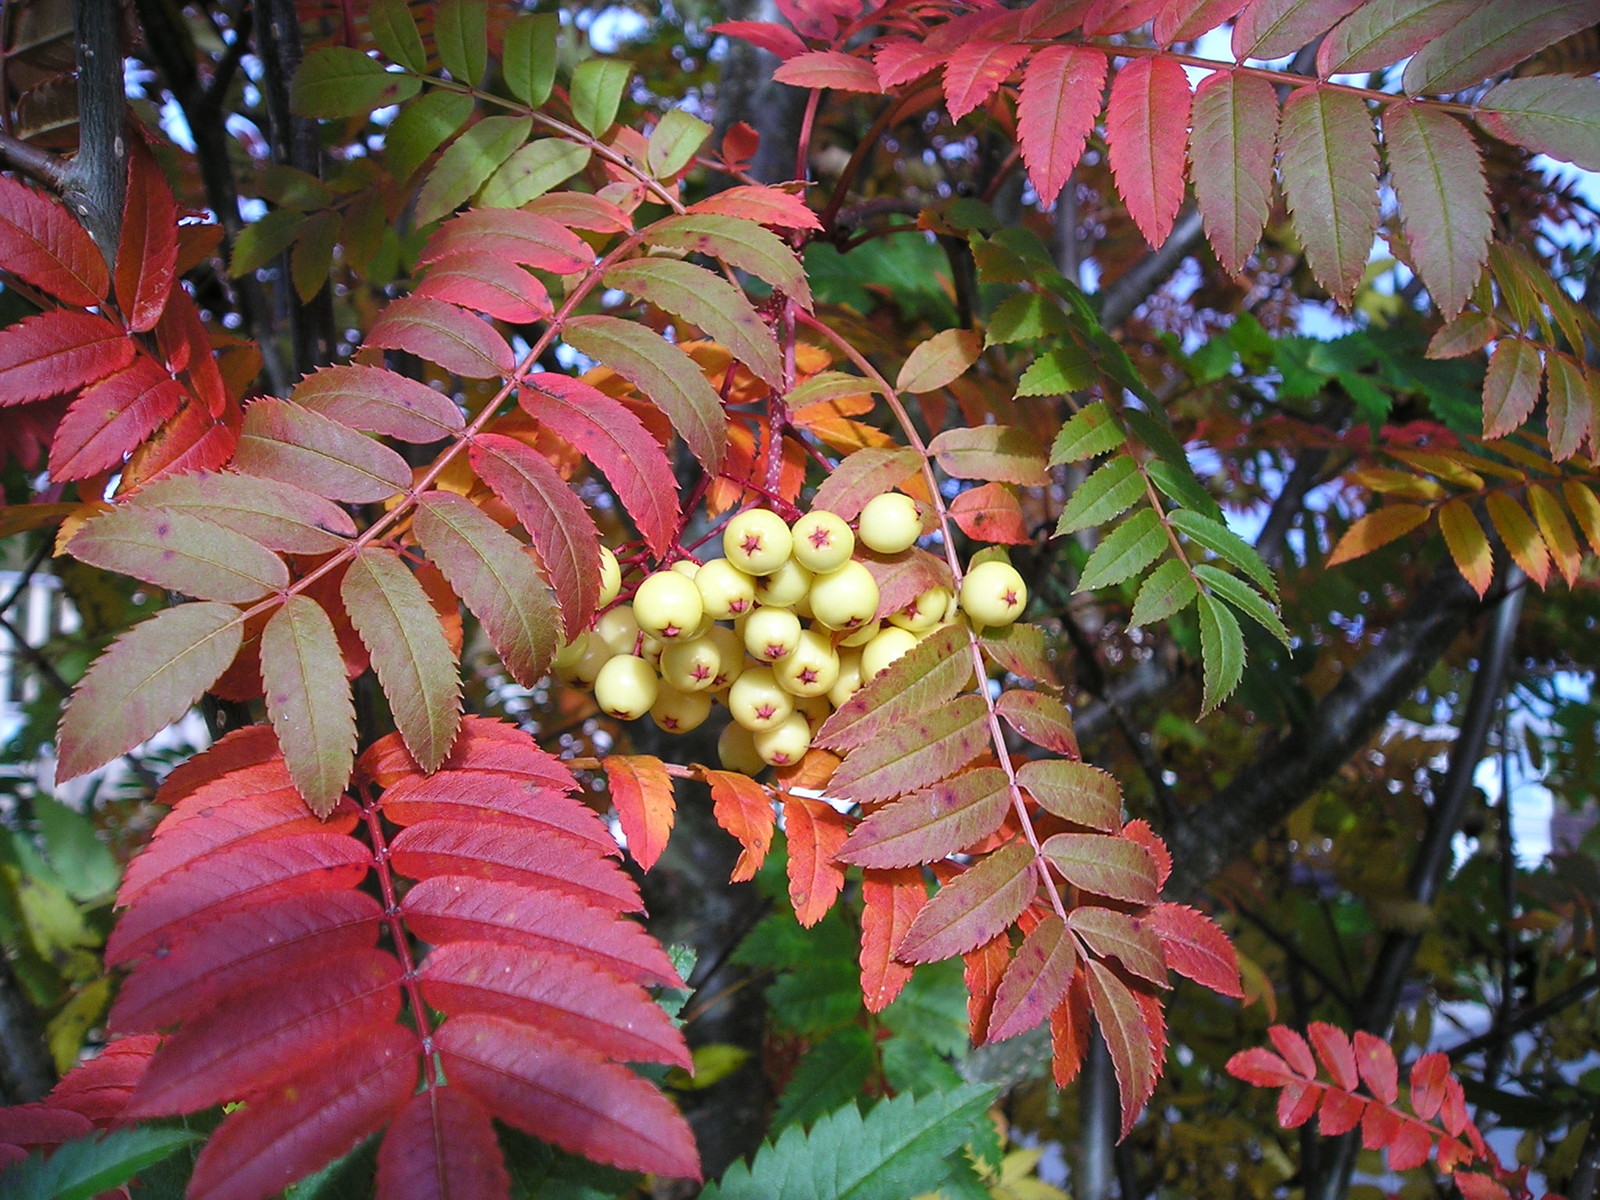 Vibrant Autumn colours at Grantown-on-Spey Caravan Park